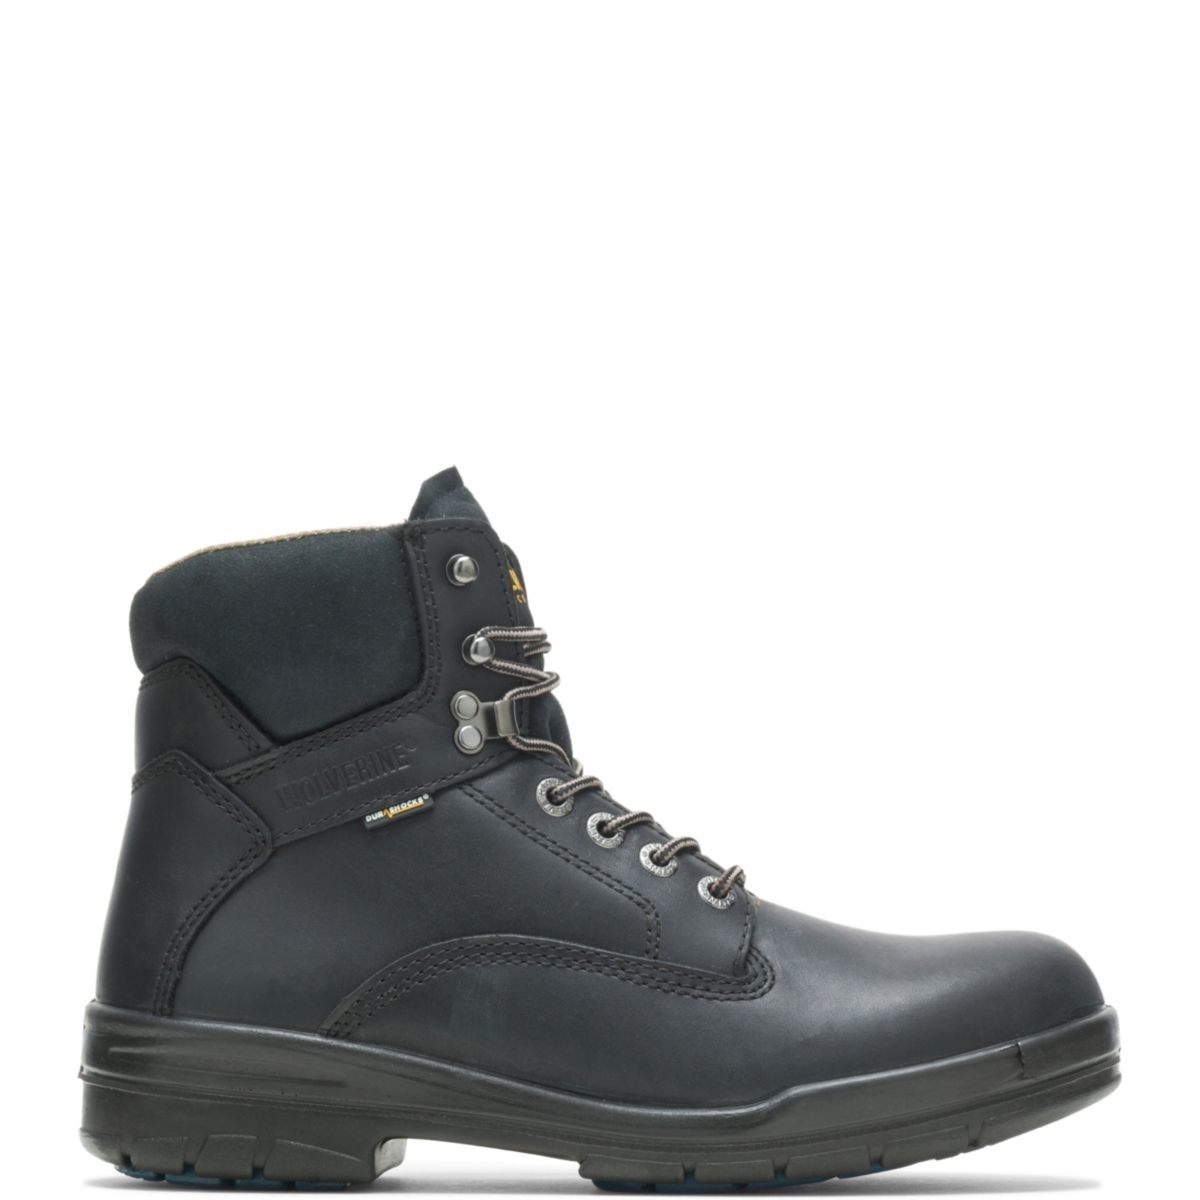 WOLVERINE Men's 6 DuraShocksÂ® Slip Resistant Direct-Attached Lined Soft Toe Work Boot Black - W03123 14 WIDE BLACK - BLACK, 14